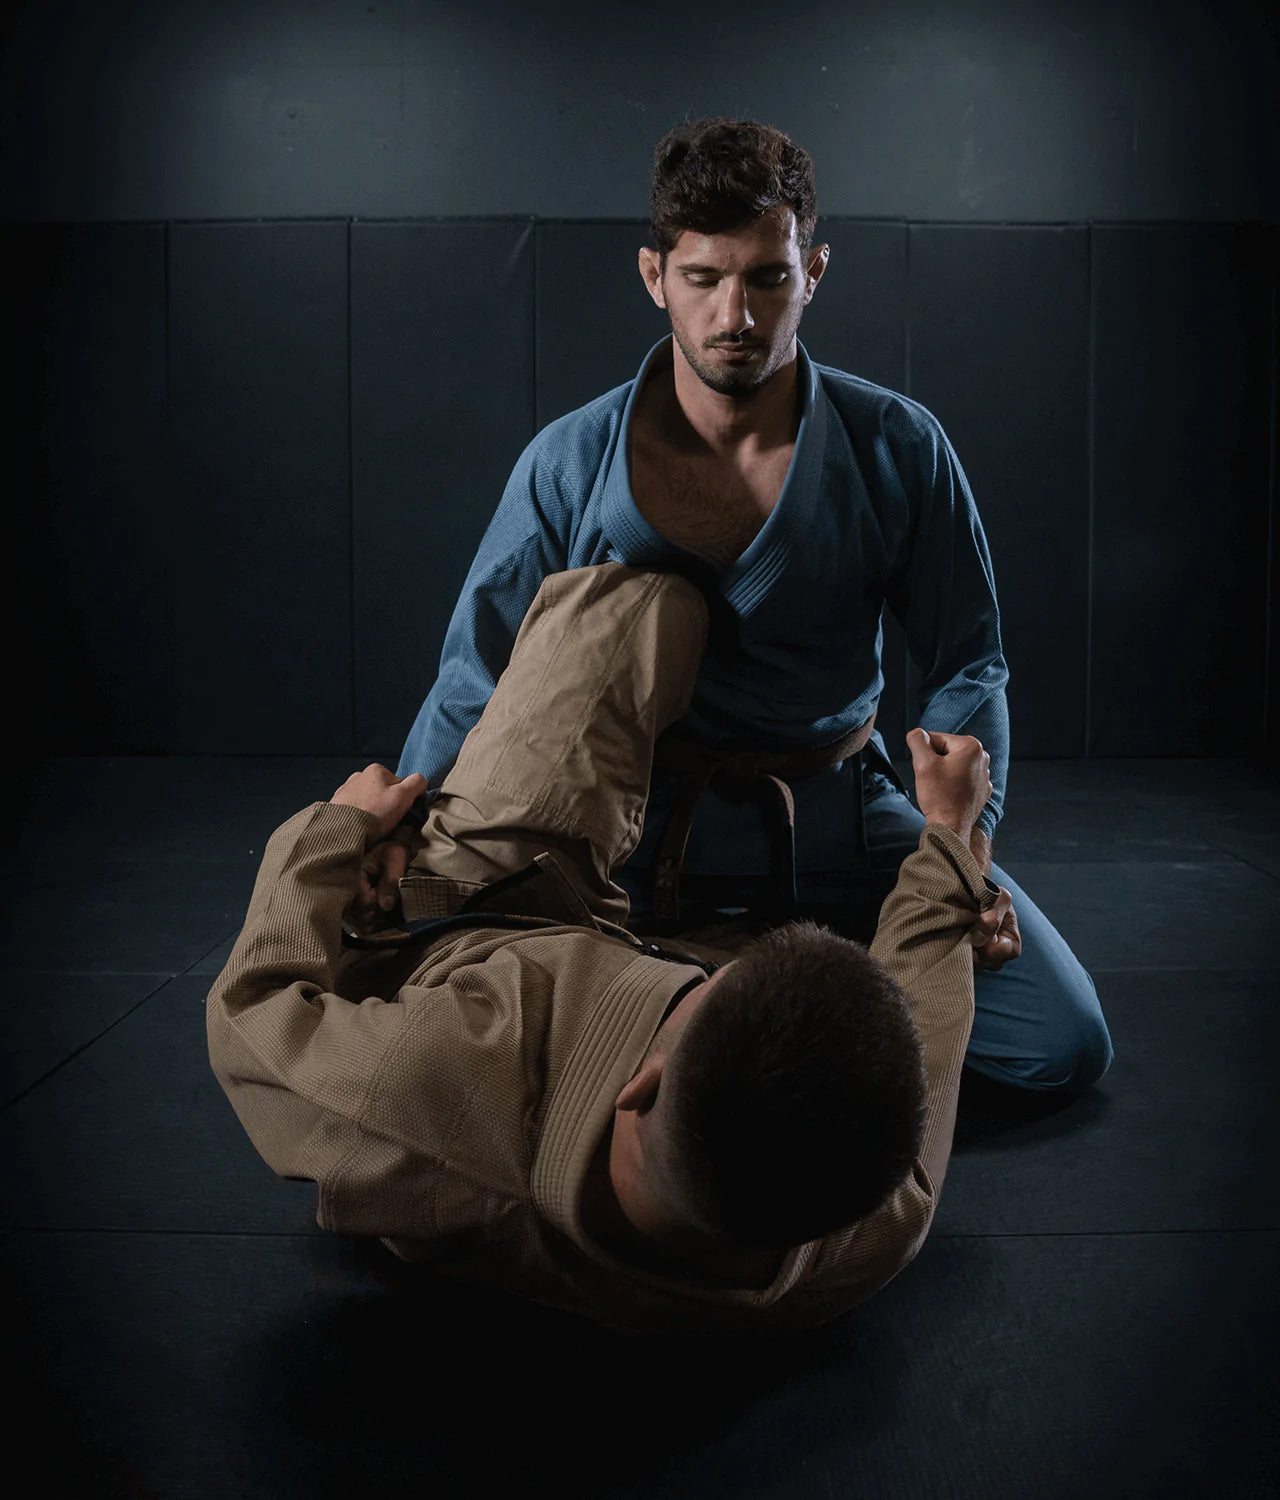 Elite Sports Men's Essential Gray Brazilian Jiu Jitsu BJJ Gi